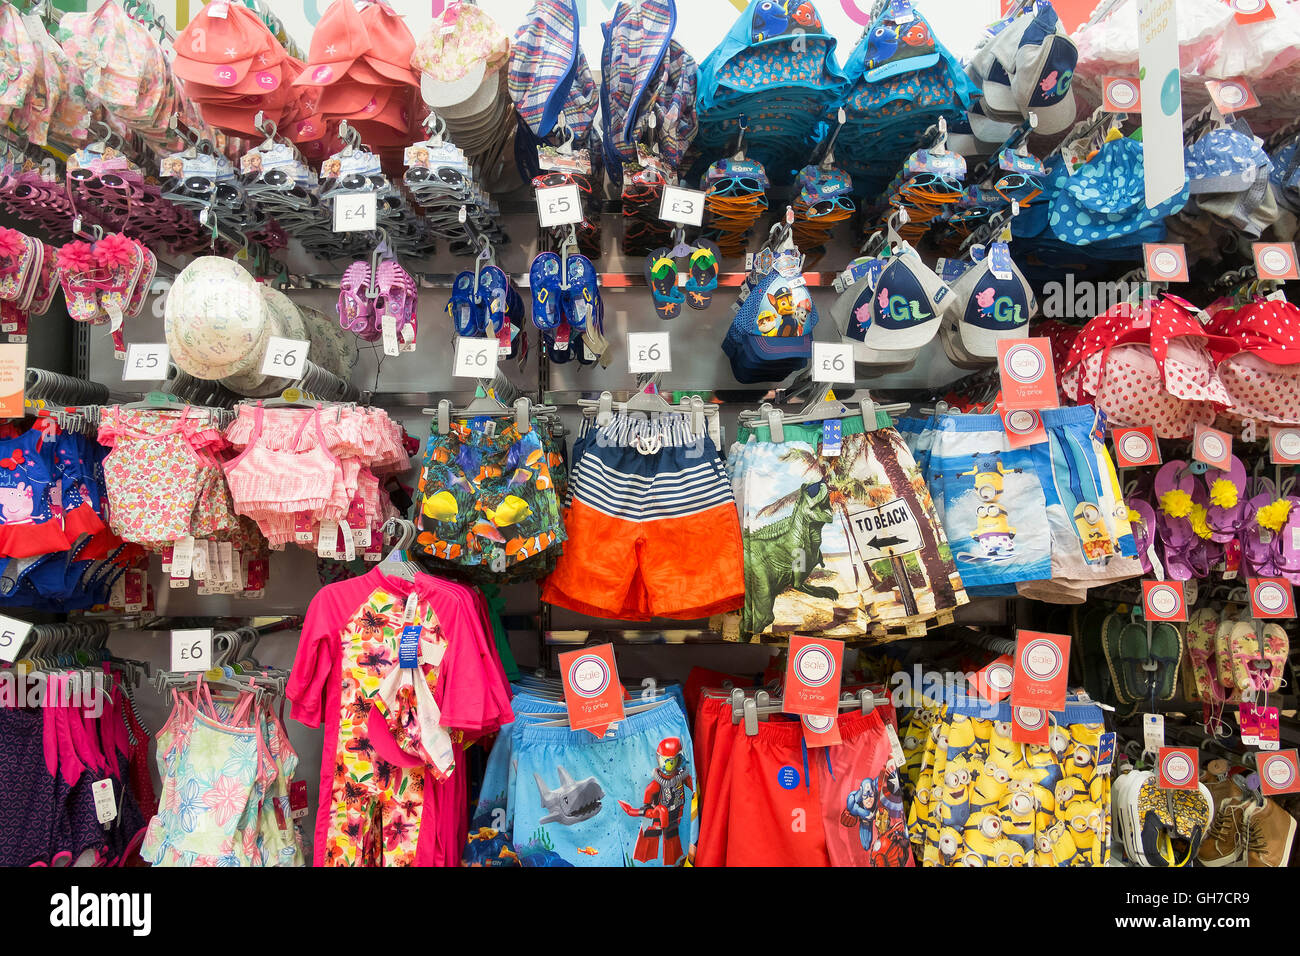 Une exposition de vêtements d'enfants colorés dans un supermarché Morrisons. Banque D'Images